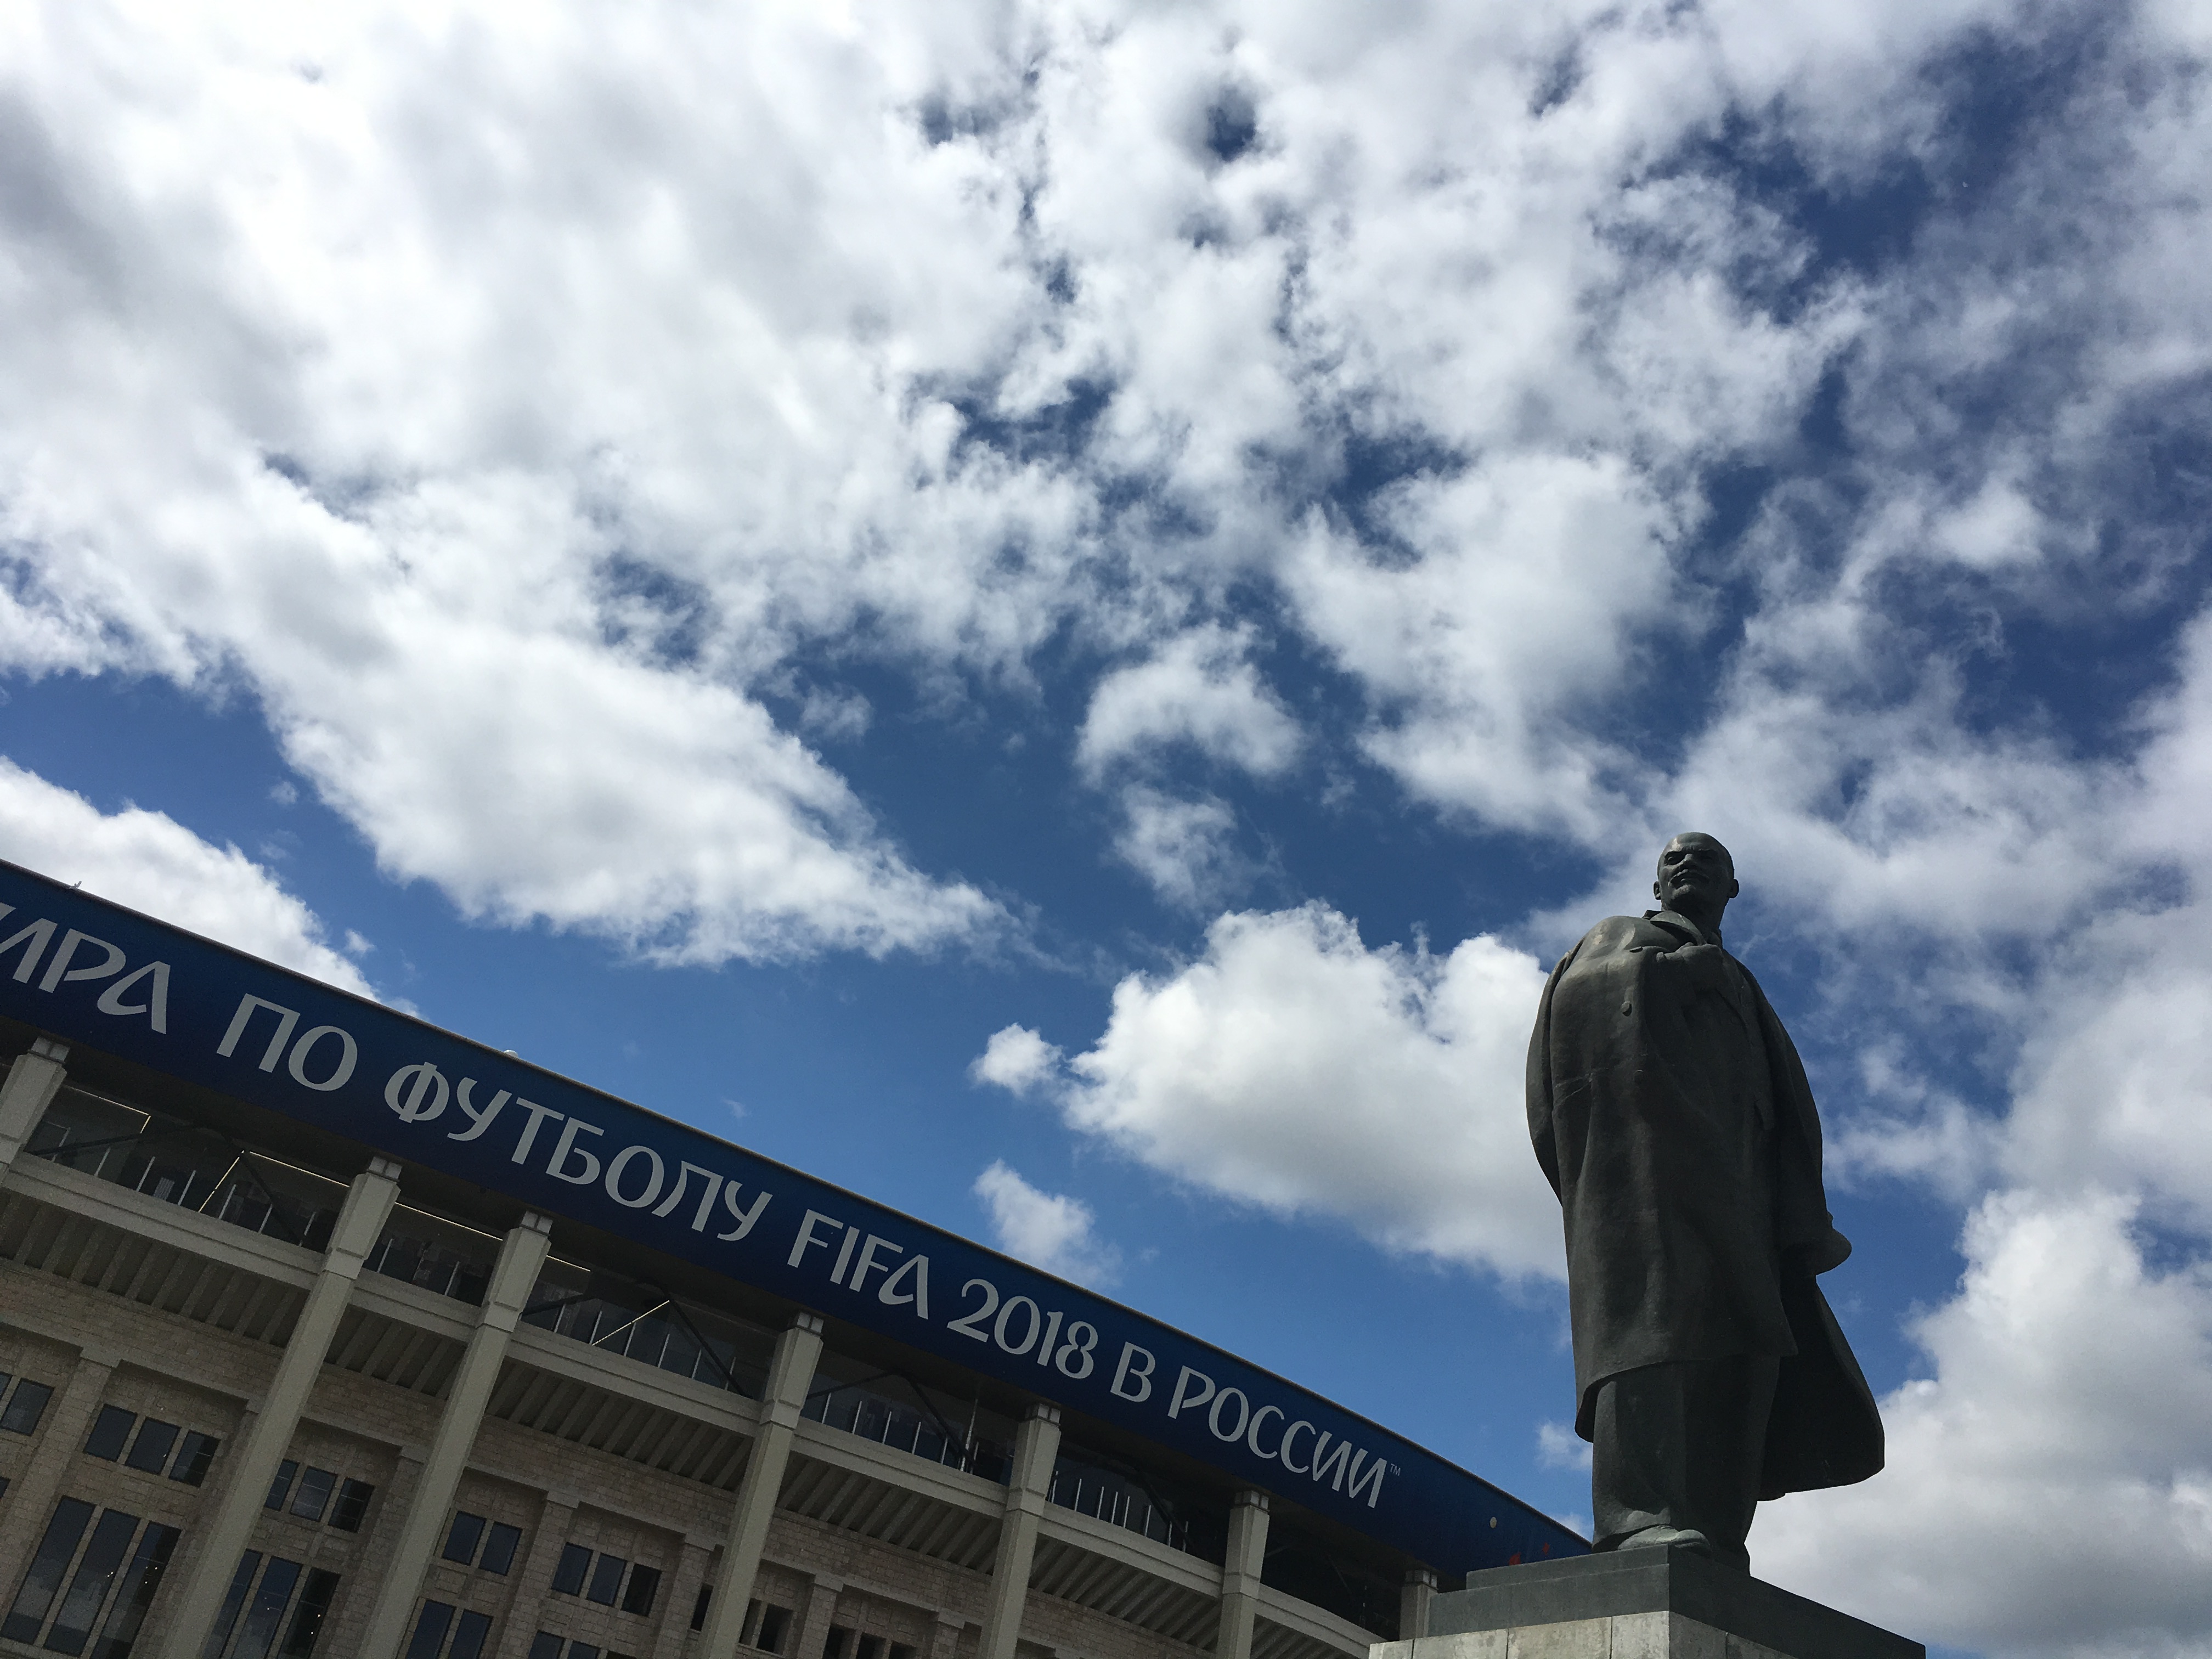 盧日尼基體育場外有偉人列寧的雕像_fororder_微信圖片_20180614154719